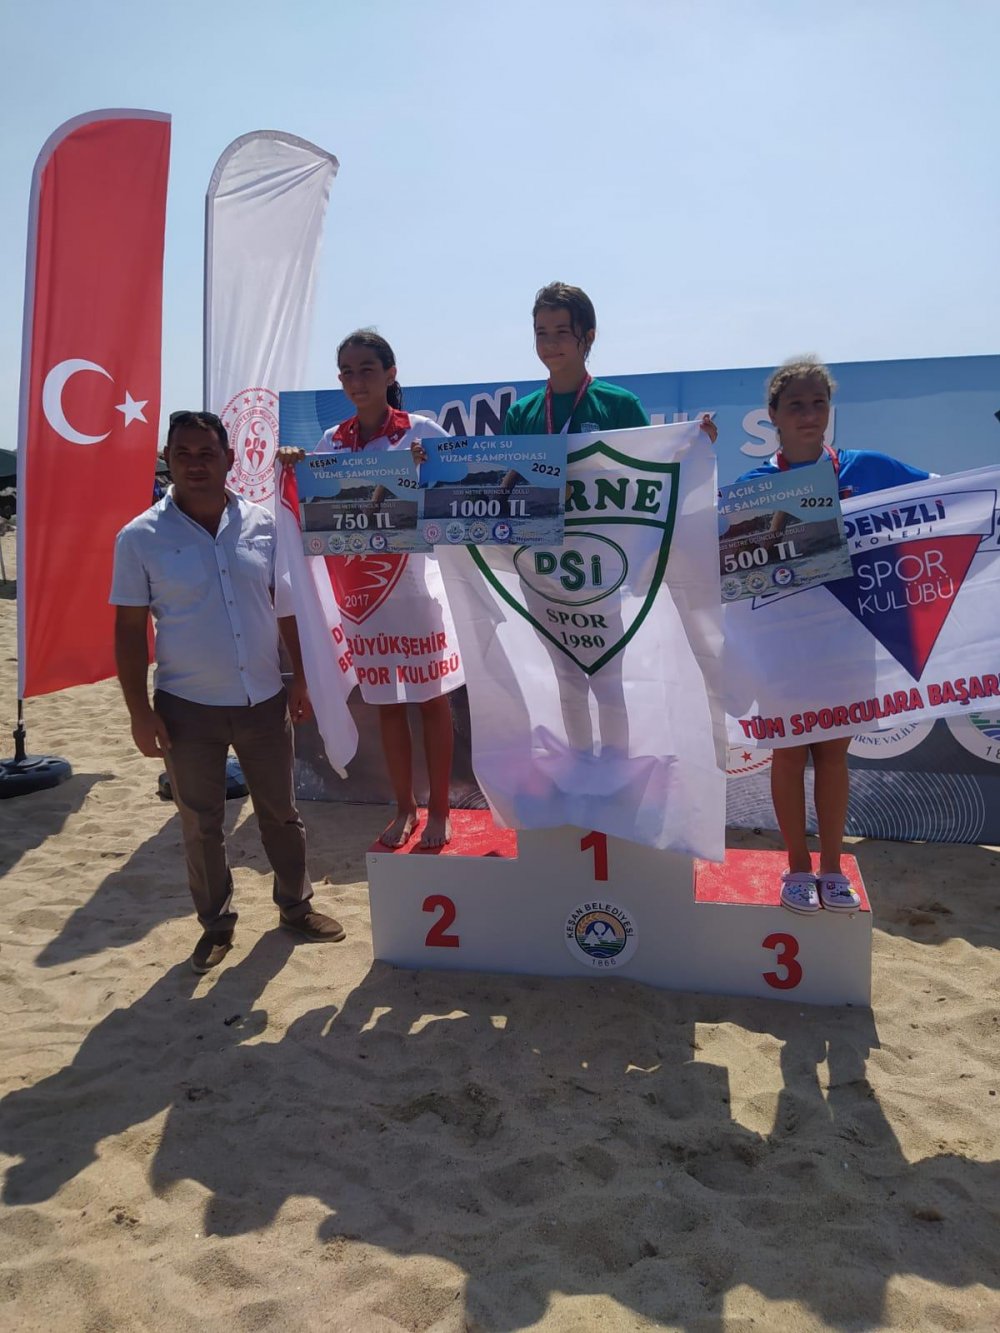 Denizli Büyükşehir Belediyespor Yüzme Takımı, Edirne’de düzenlenen Açık Su Yüzme Şampiyonası’nda 3 altın, 1 gümüş, 1 bronz madalya alarak başarılarına bir başarı daha ekledi.